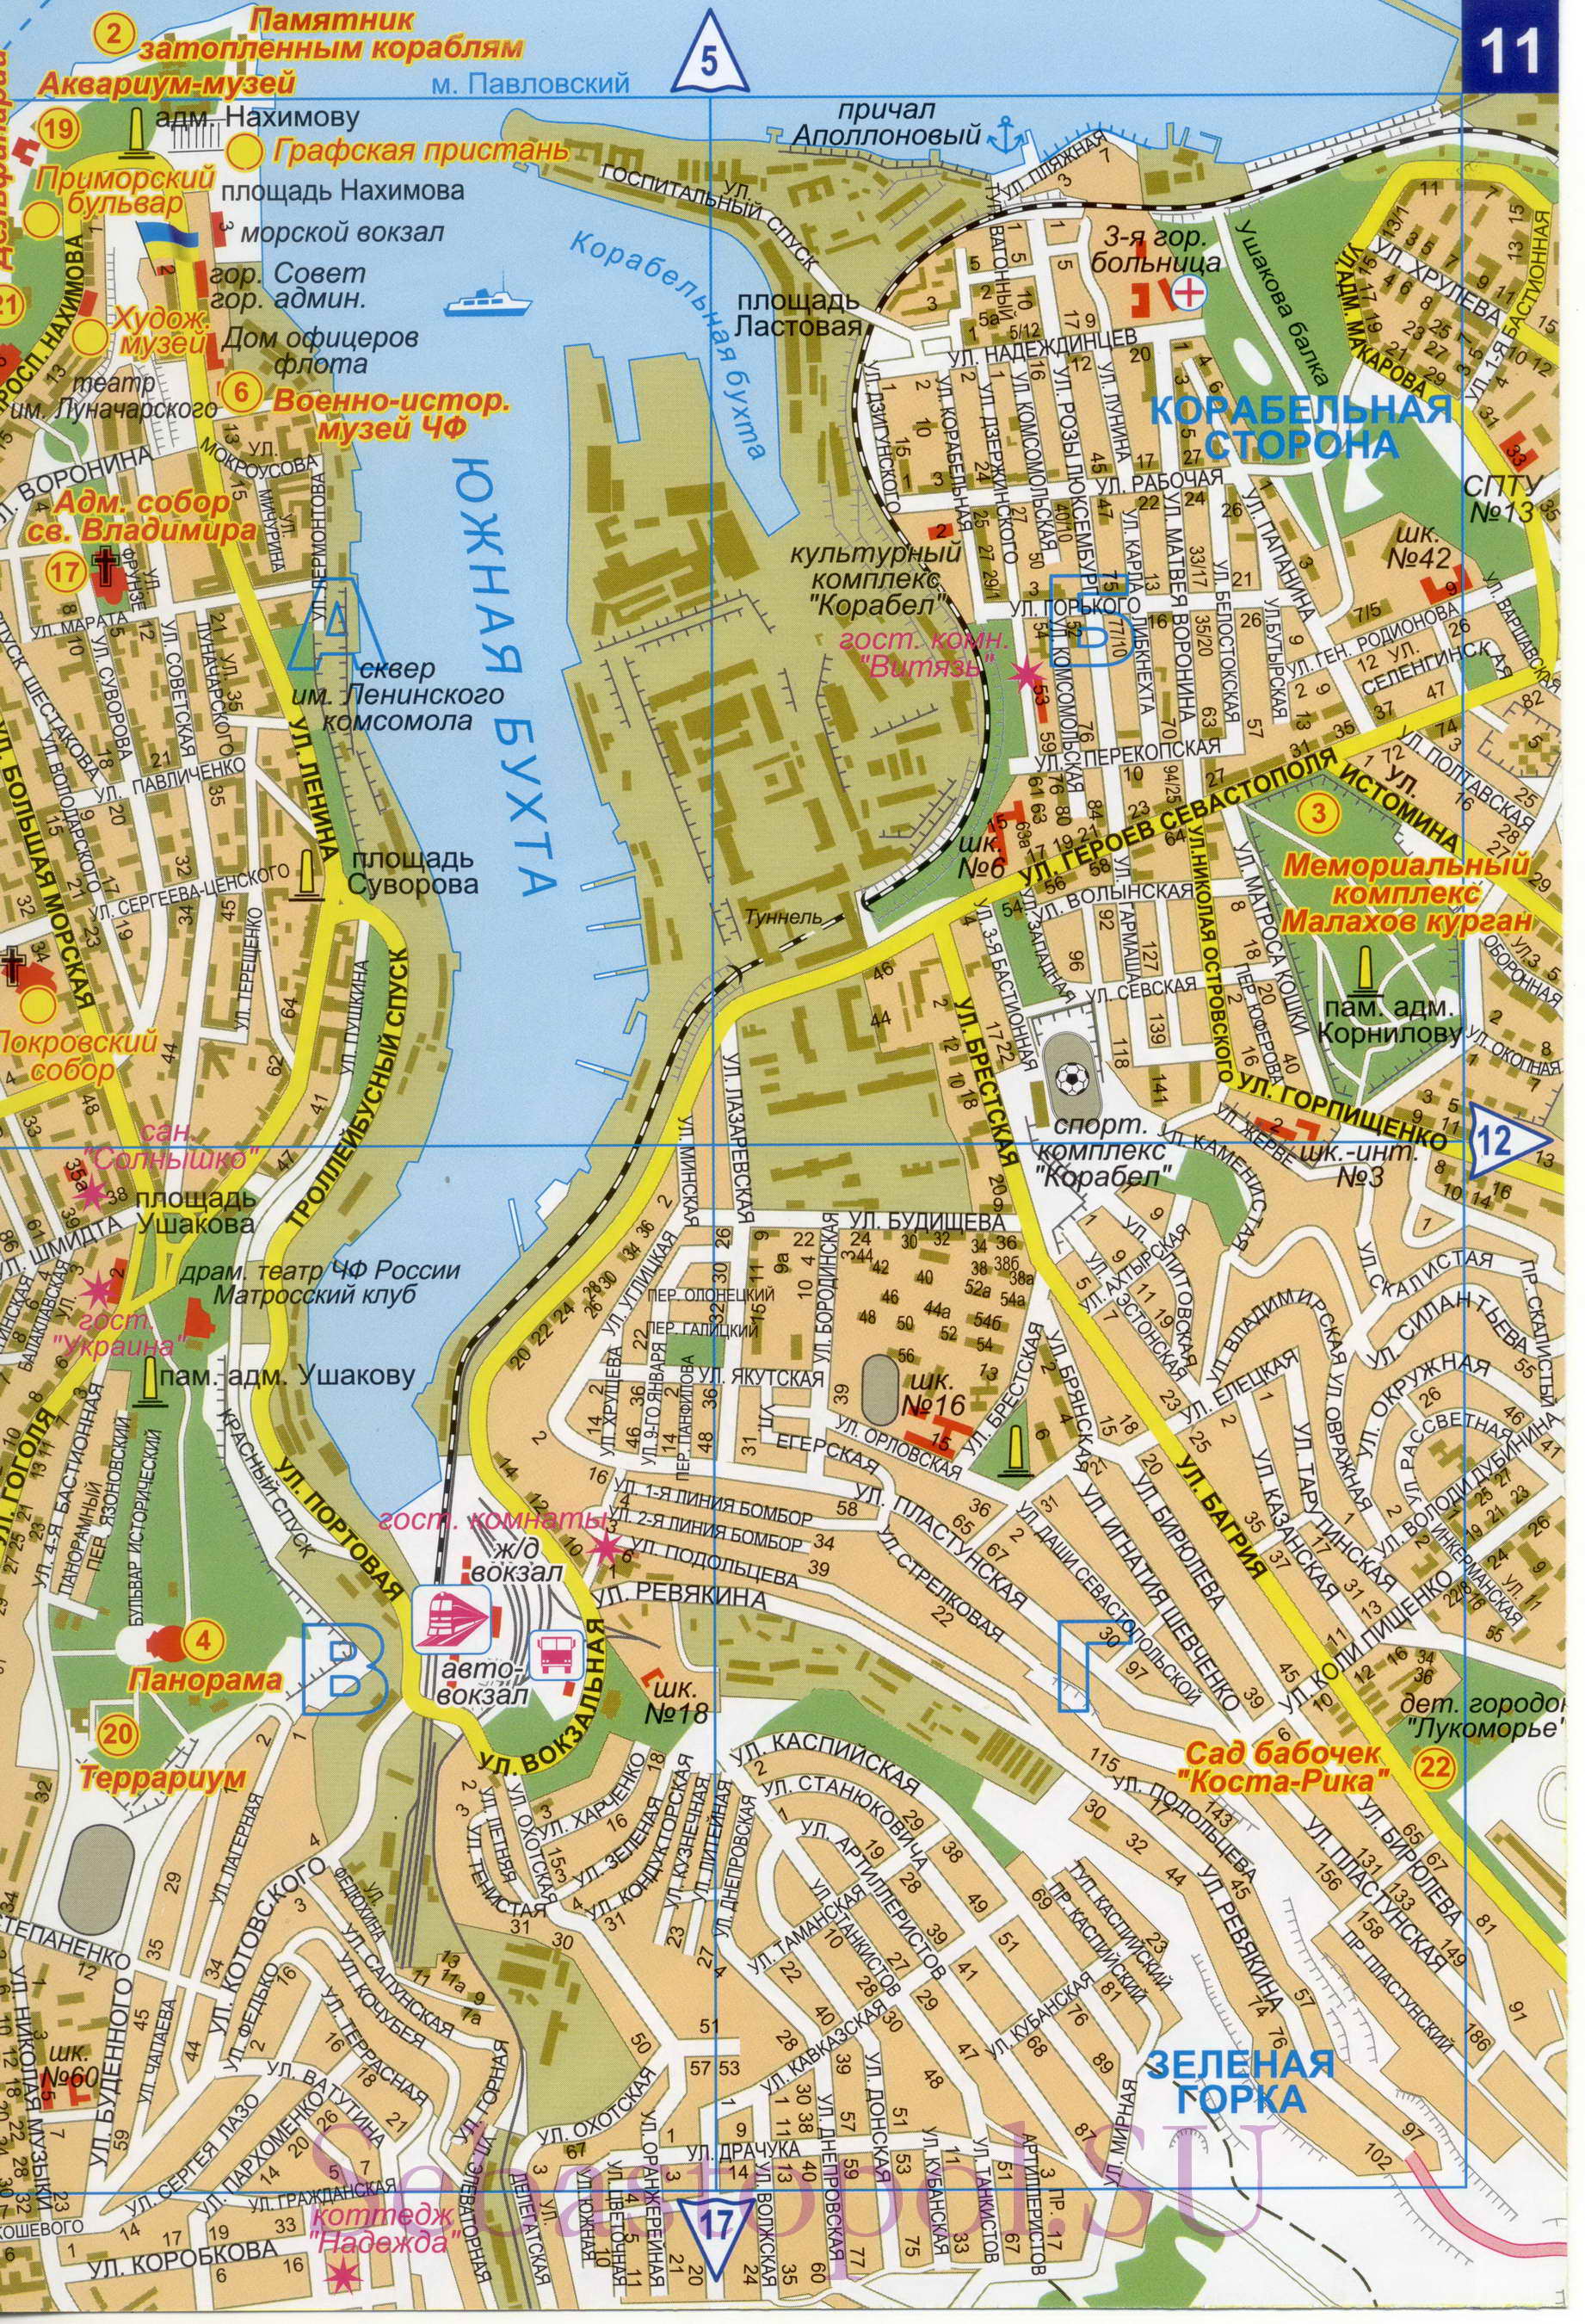 Карта Севастополя. Подробная карта Севастополя с номерами домов. Новая карта Севастополя 2011, D1 - 